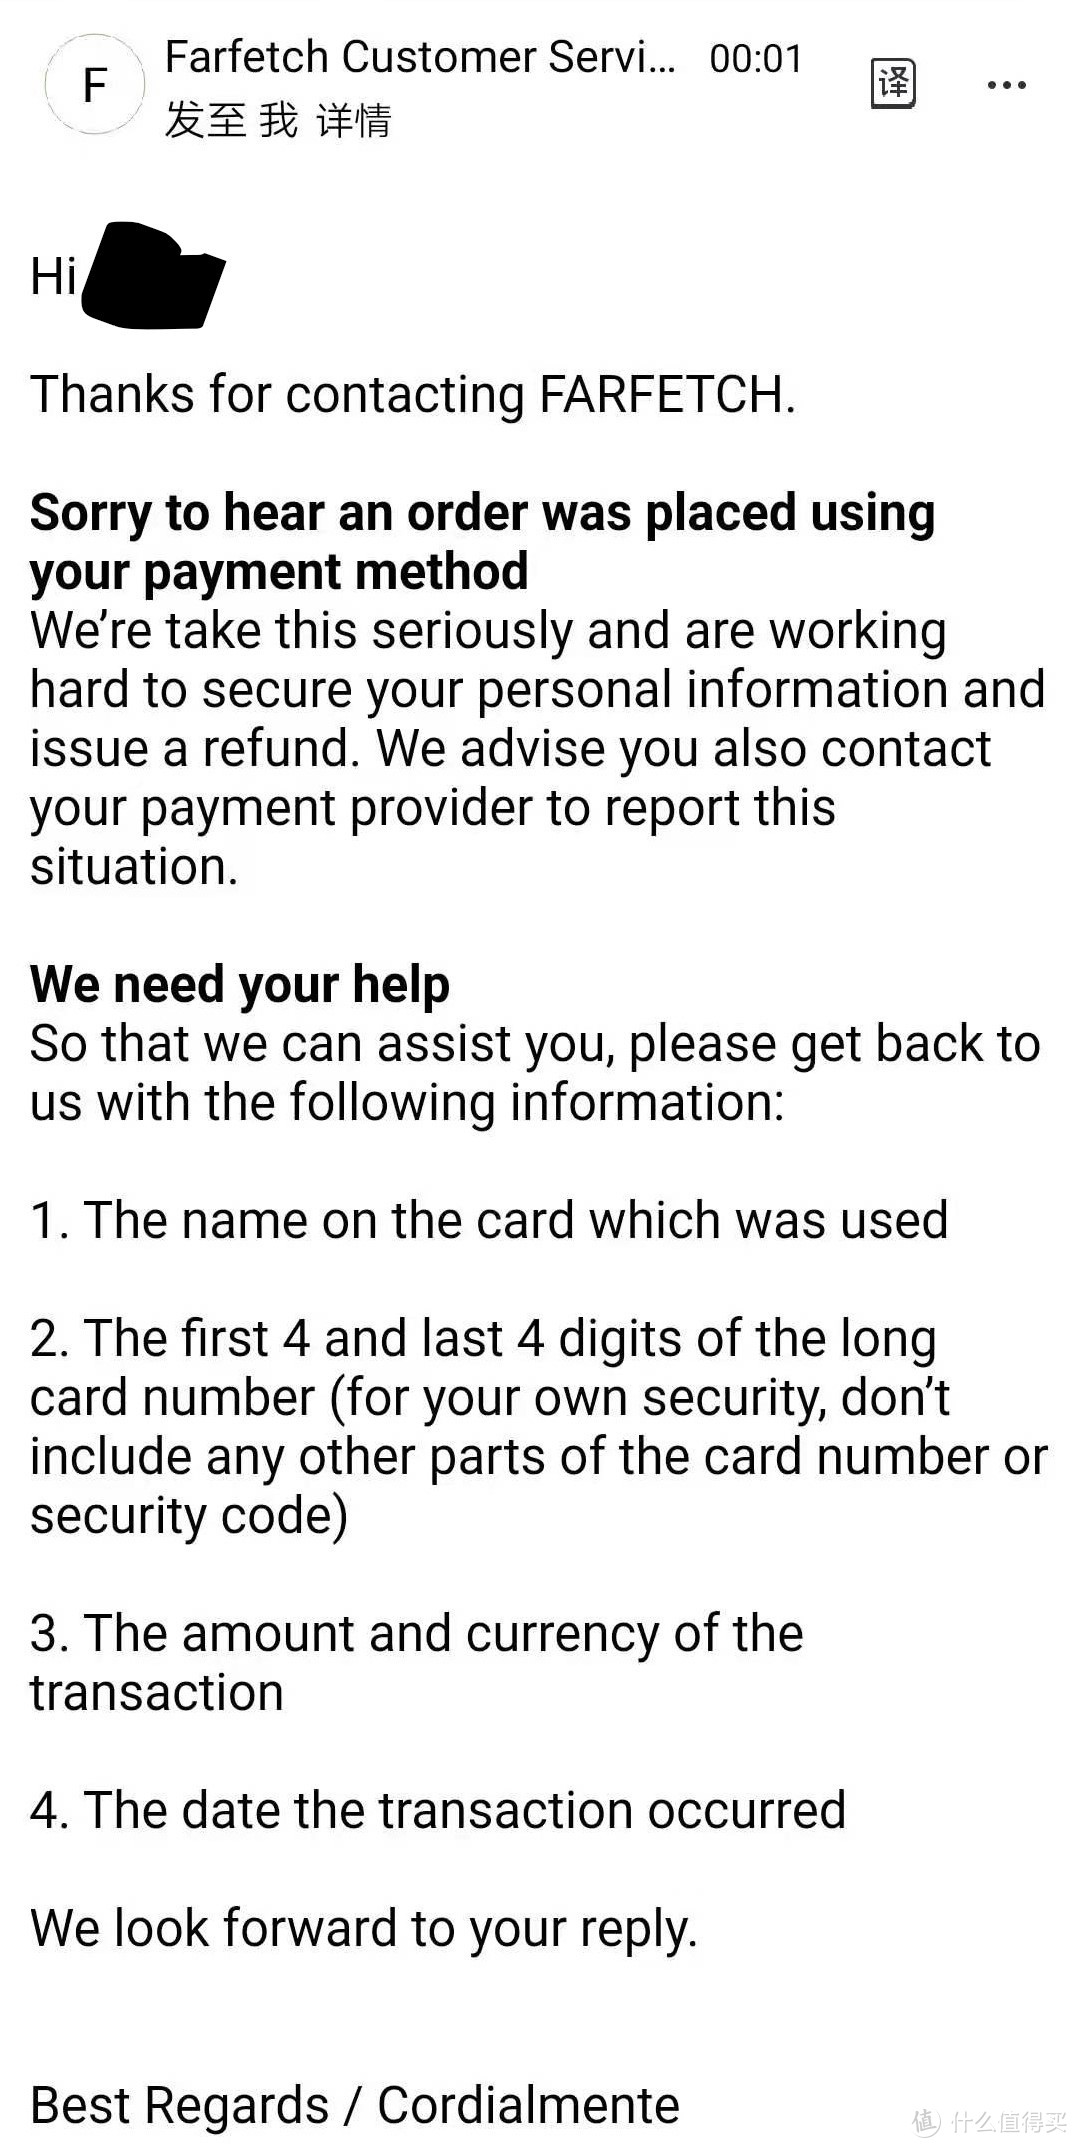 招商银行VISA信用卡被盗刷4300英镑 9小时追回经历